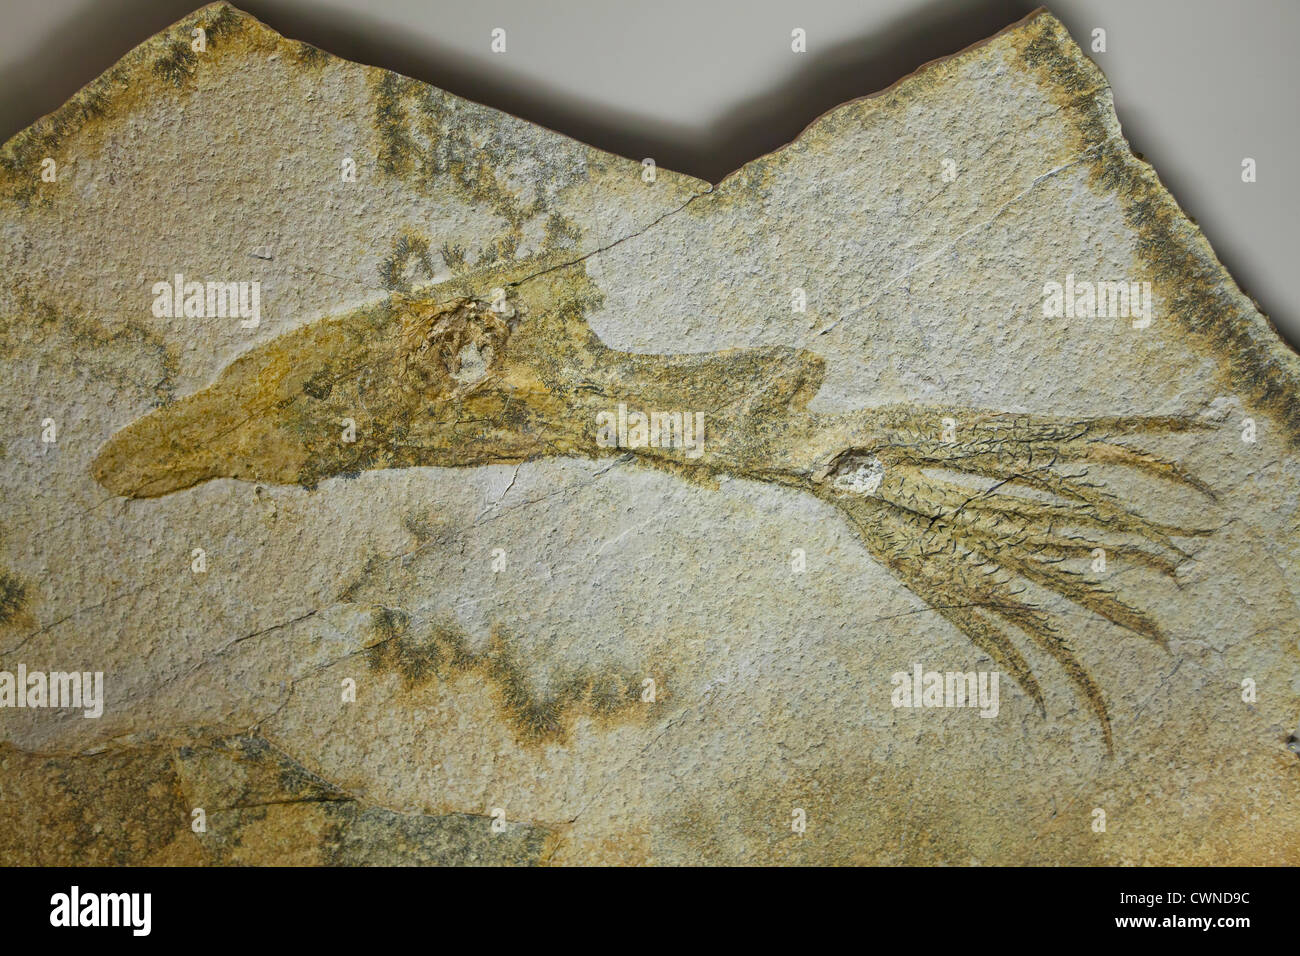 Fósil de Squid desde finales del periodo Jurásico Foto de stock